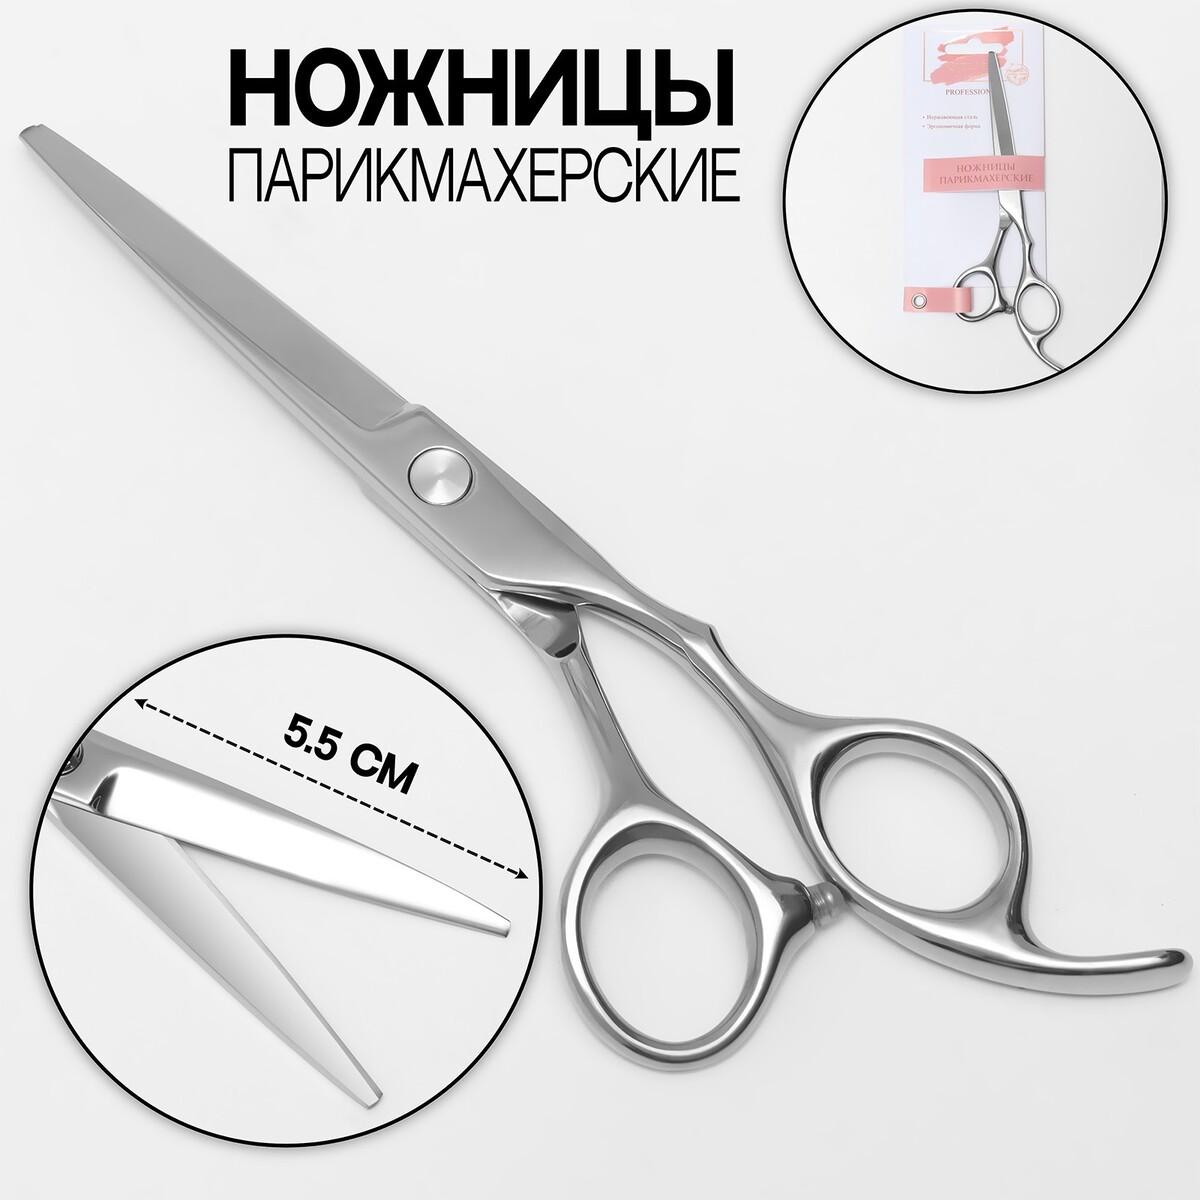 Ножницы парикмахерские с упором, загнутые кольца, лезвие — 5,5 см, цвет серебристый ножницы парикмахерские с упором